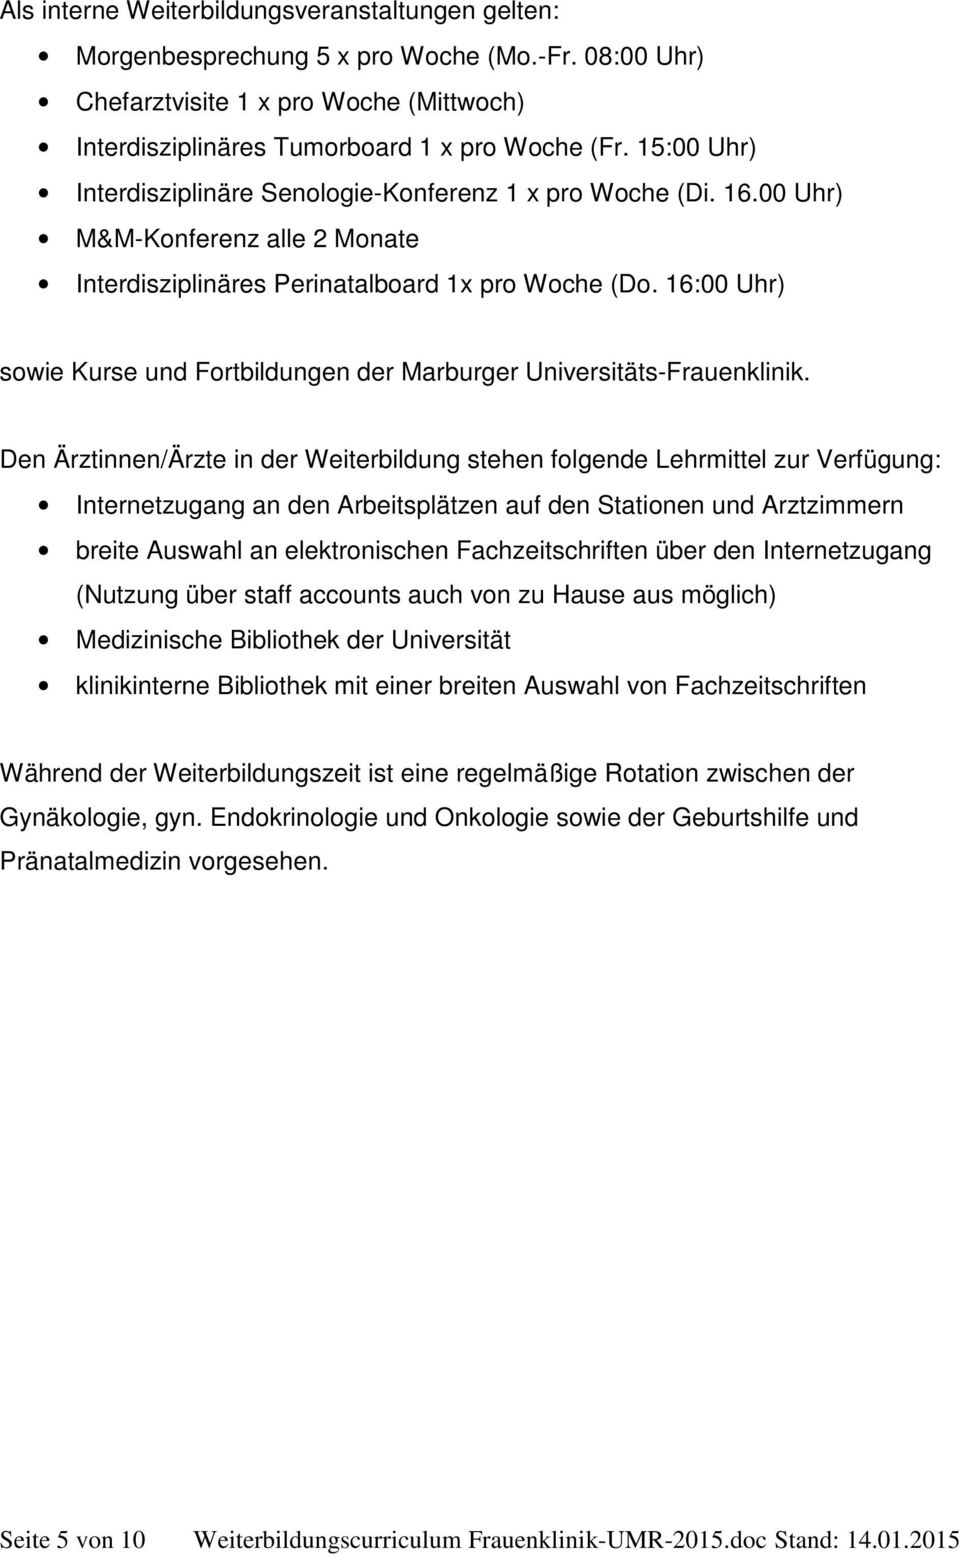 16:00 Uhr) sowie Kurse und Fortbildungen der Marburger Universitäts-Frauenklinik.